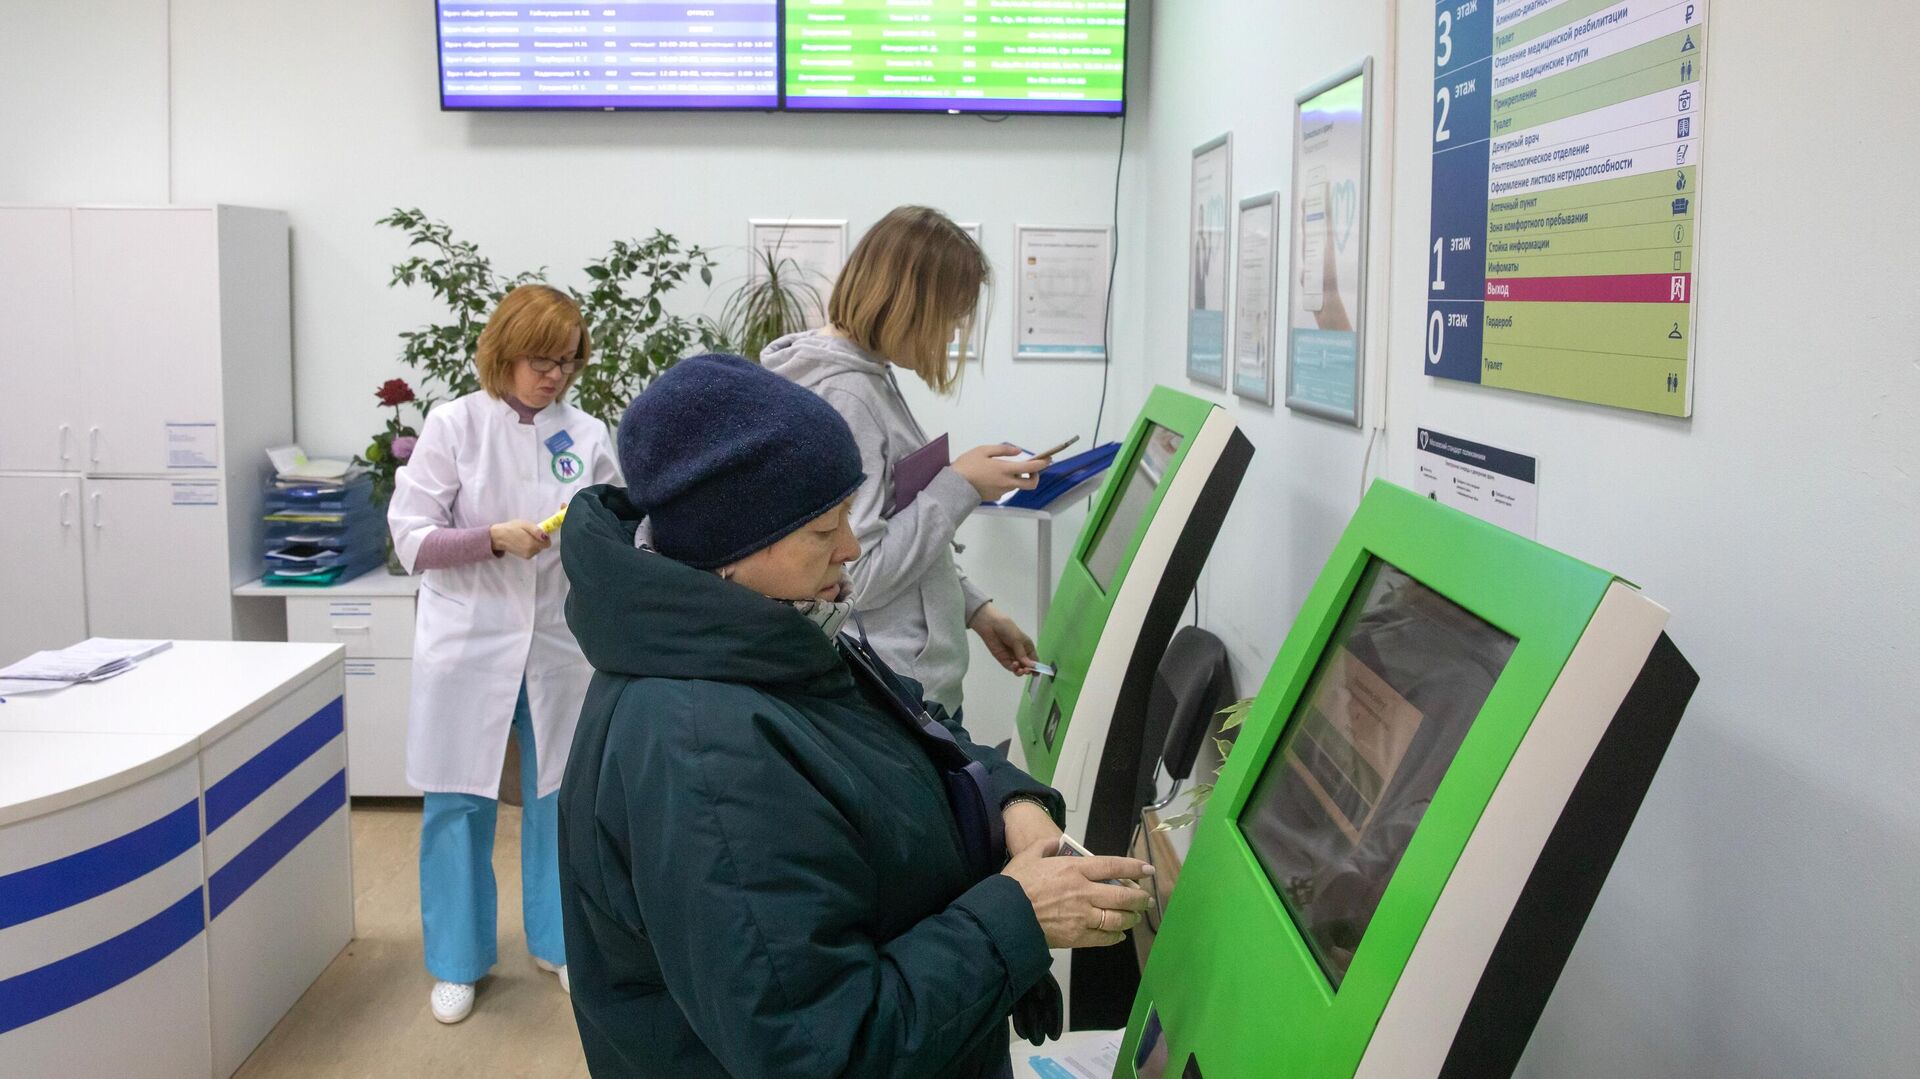  Пациенты записываются на прием к врачу через электронные терминалы в Москве   - РИА Новости, 1920, 18.10.2021